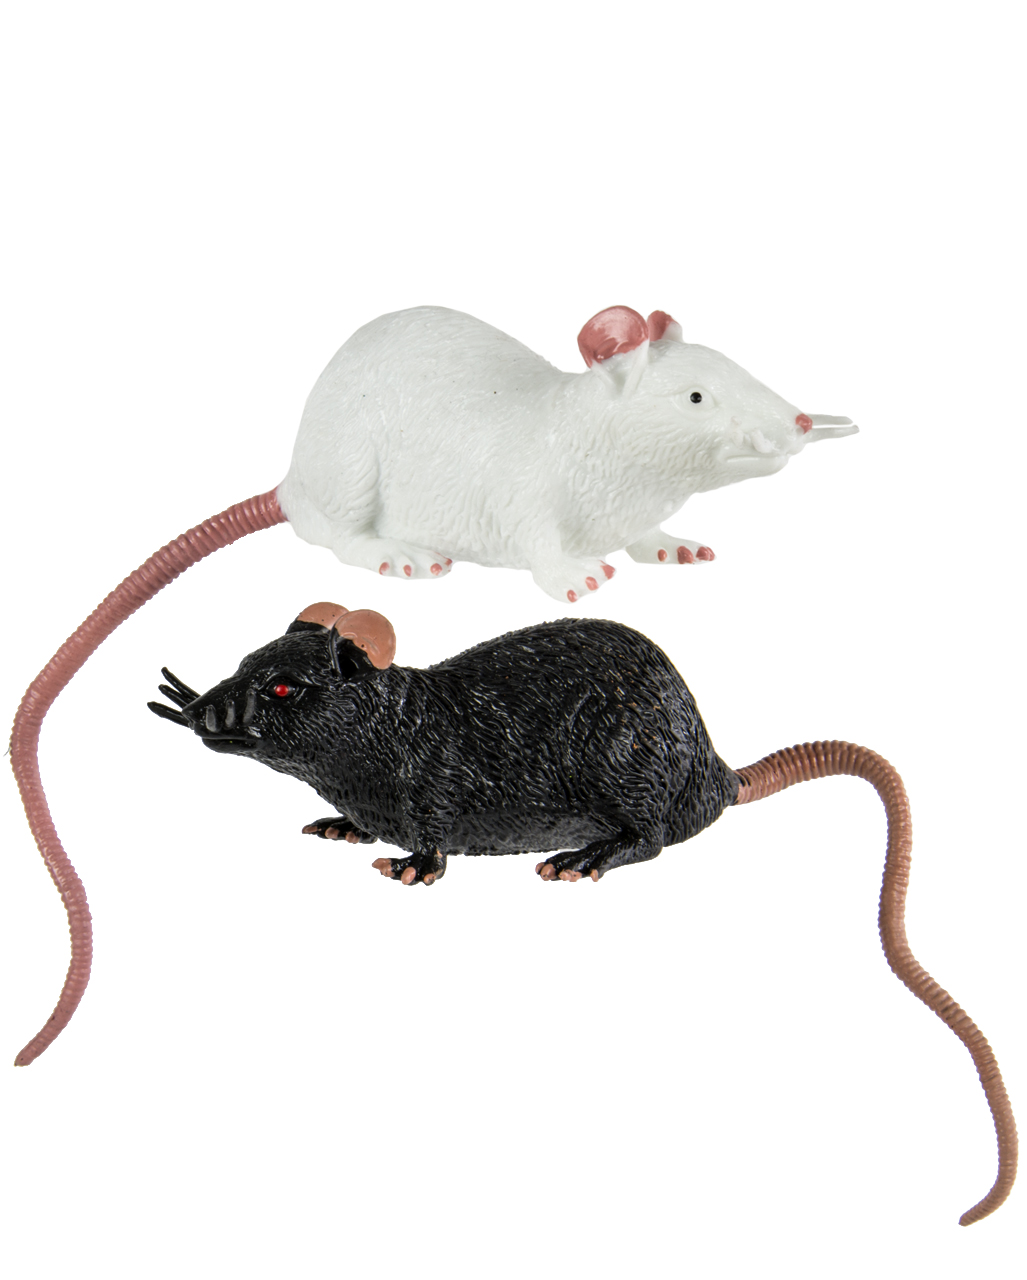 Stretch Ratte 23 cm - Schwarz / Weiß als Knet-Tier